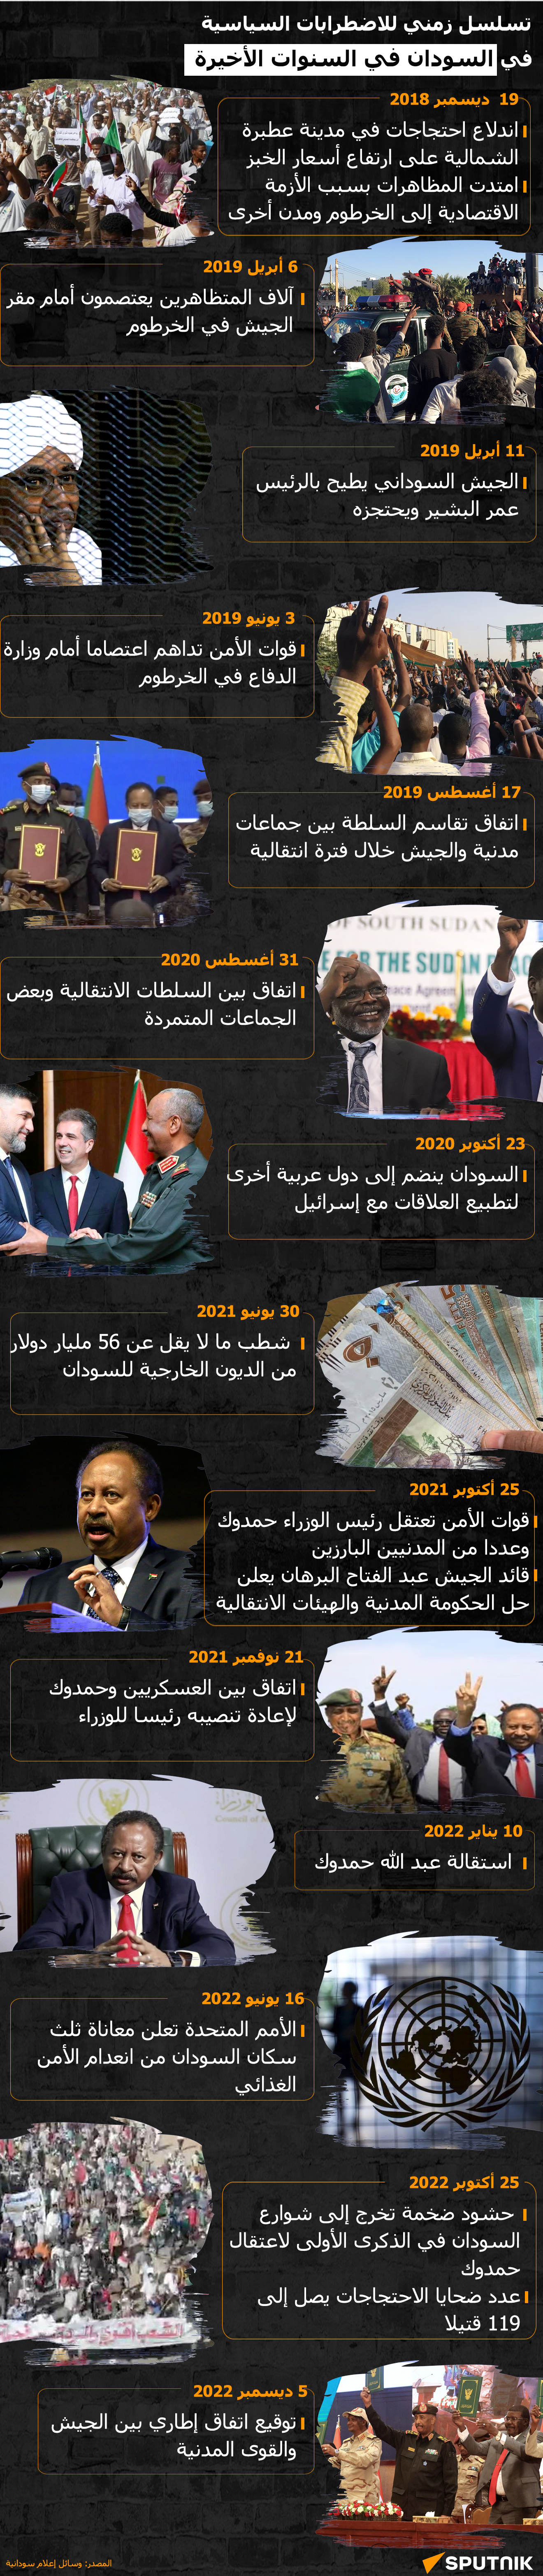  تسلسل زمني للاضطرابات السياسية في السودان في السنوات الأخيرة - سبوتنيك عربي